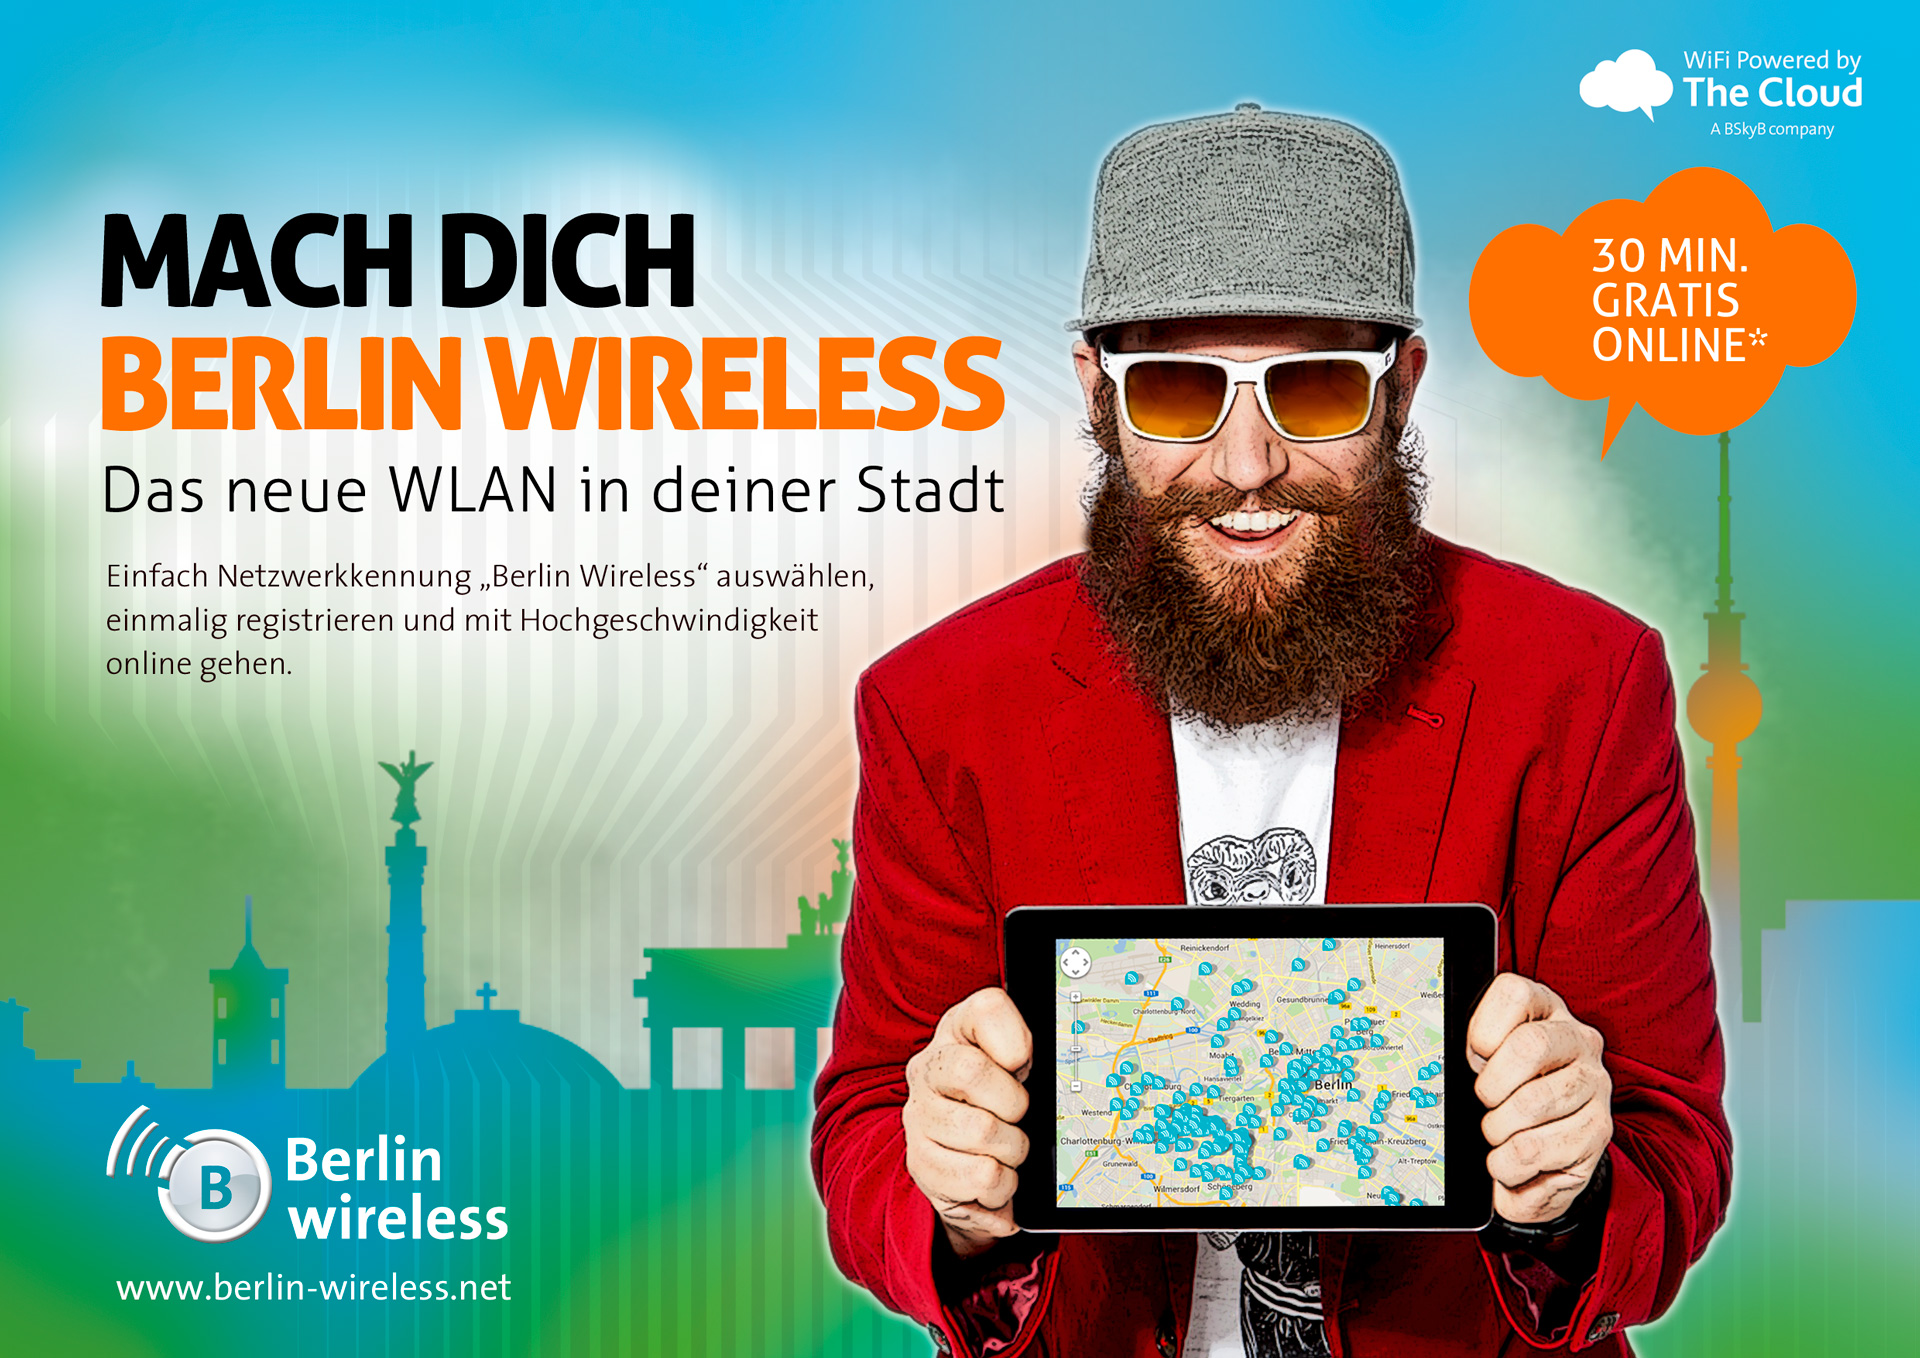 The-Cloud_Berlin-wireless-Martin-Bruss